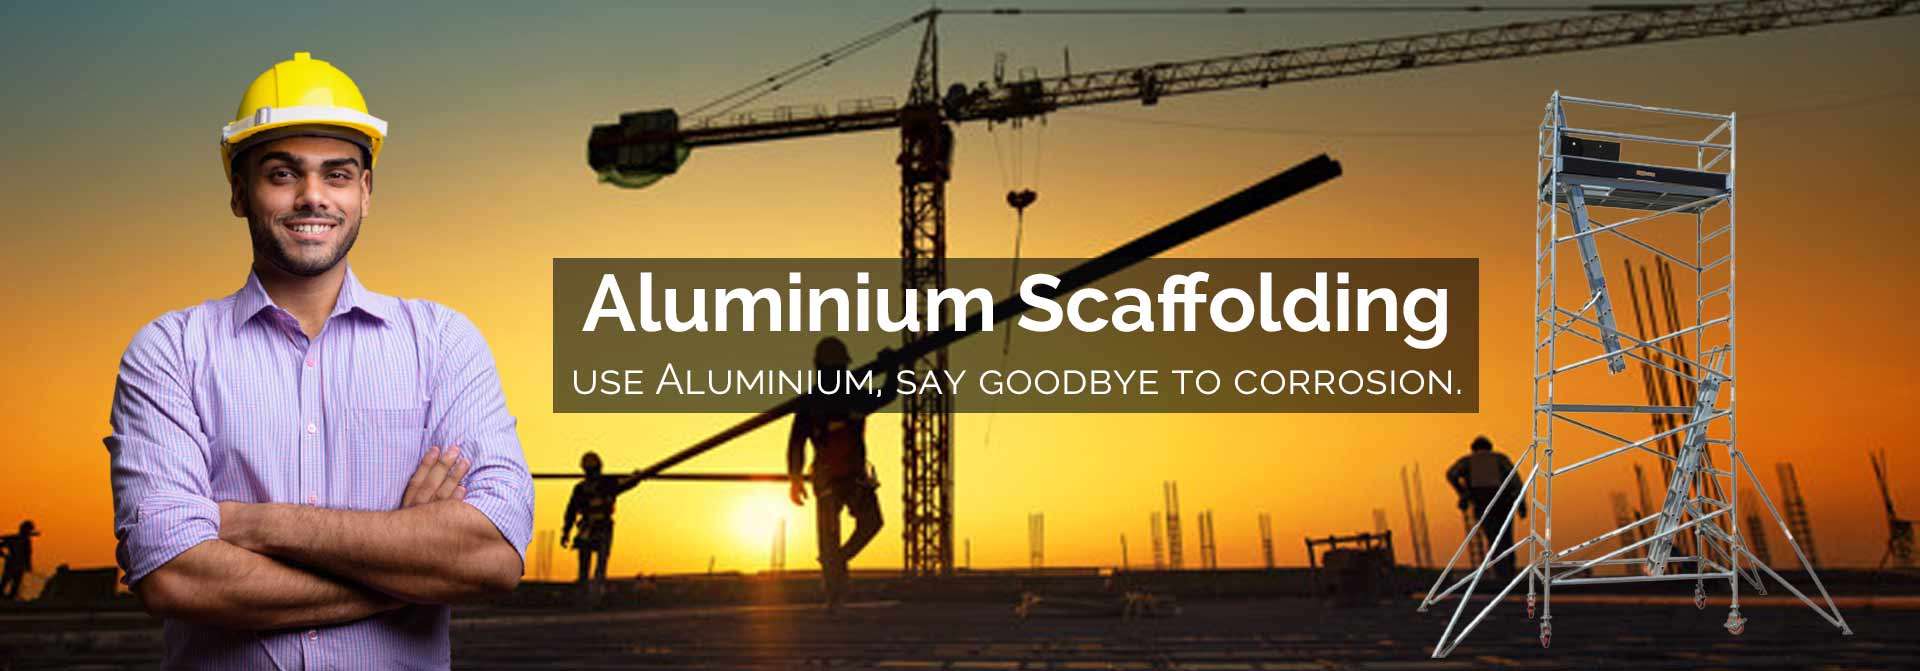 Aluminium Scaffolding Manufacturers in Delhi